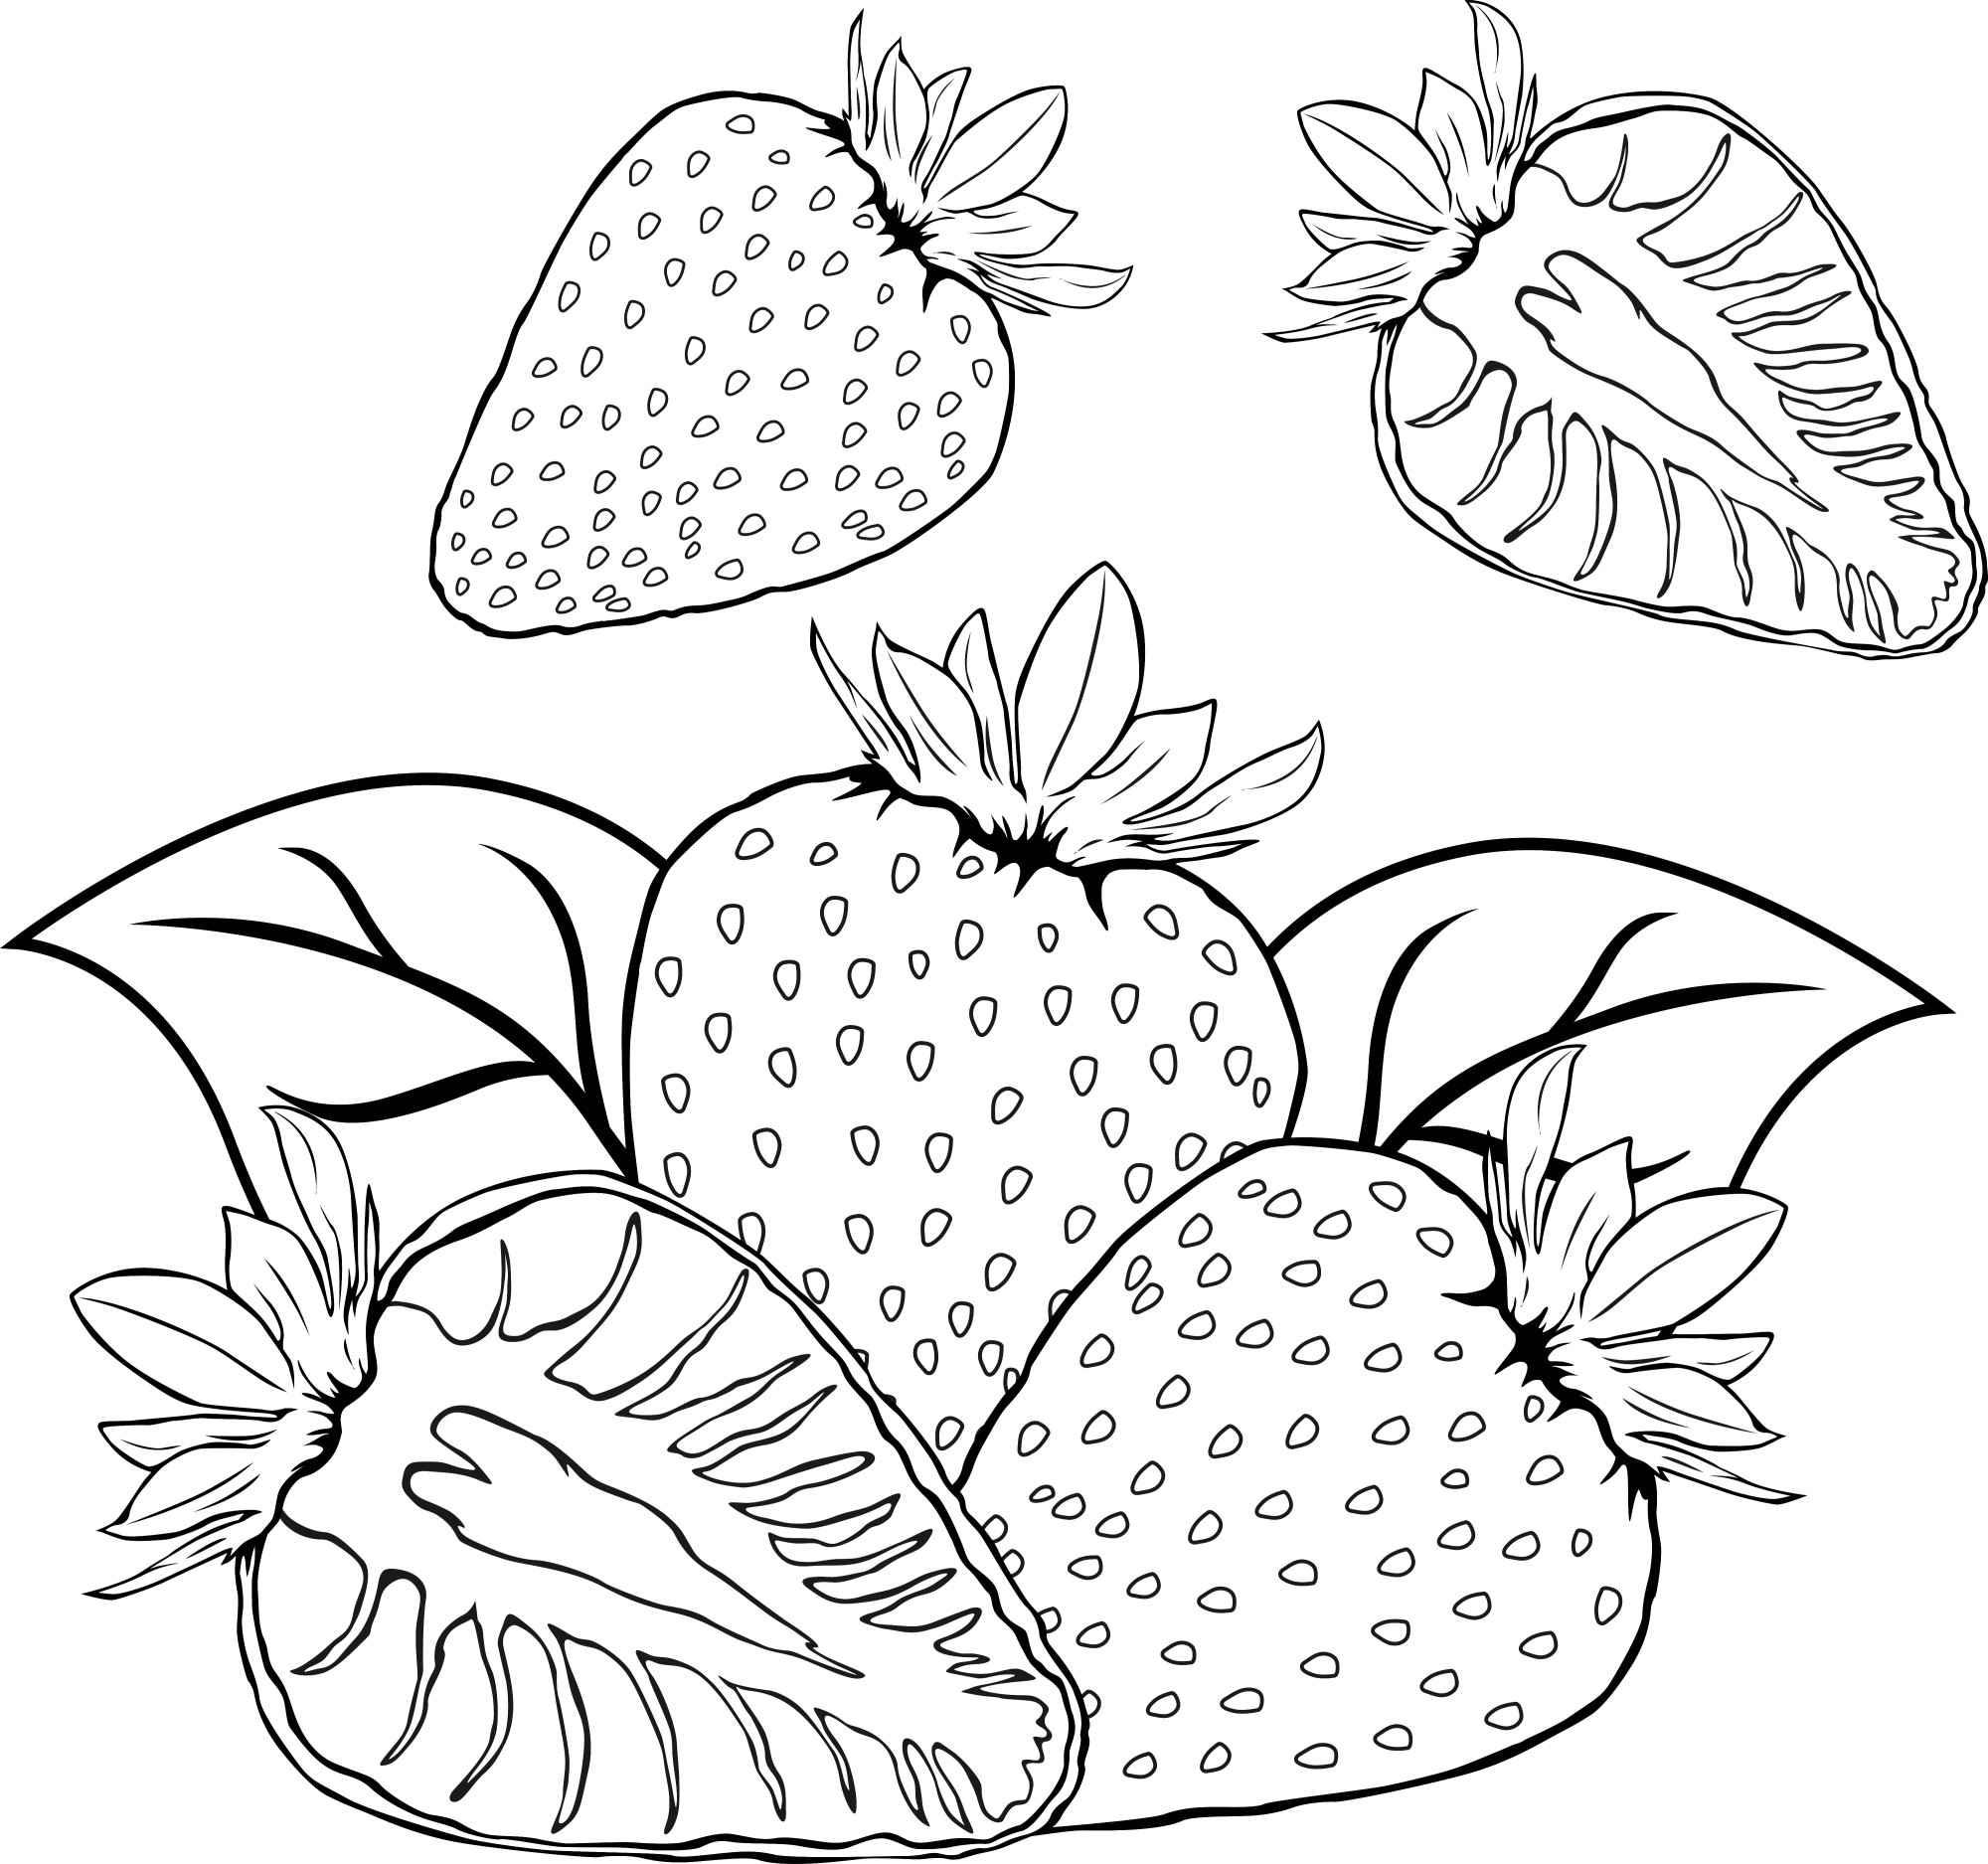 Раскраска для детей: спелая клубника с листьями